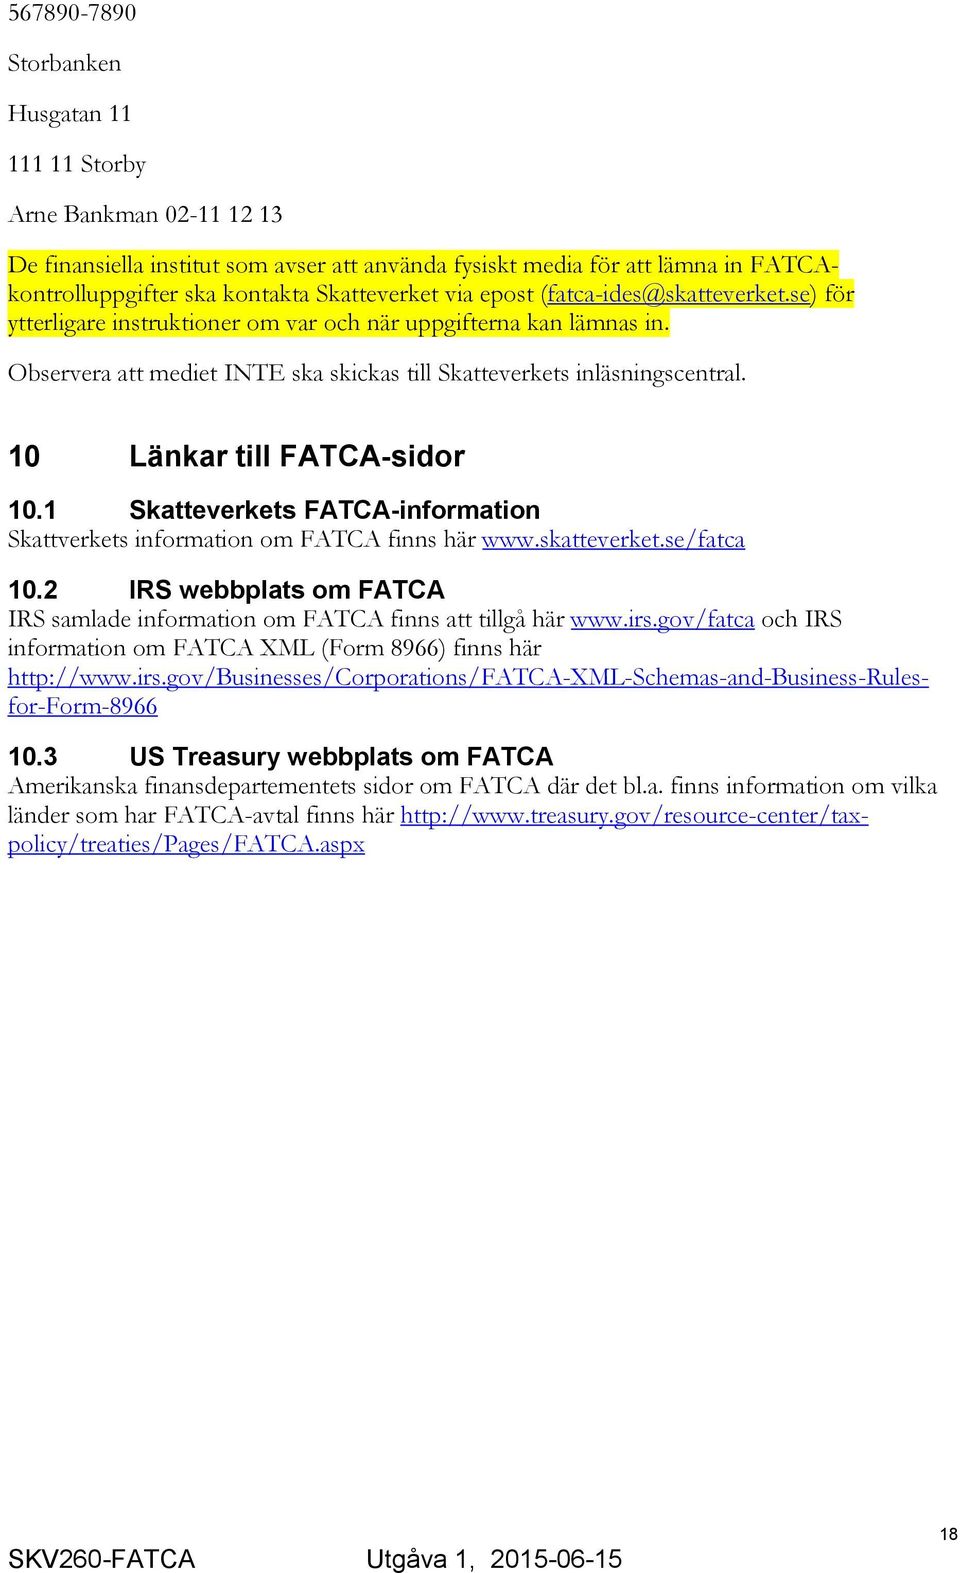 10 Länkar till FATCA-sidor 10.1 Skatteverkets FATCA-information Skattverkets information om FATCA finns här www.skatteverket.se/fatca 10.